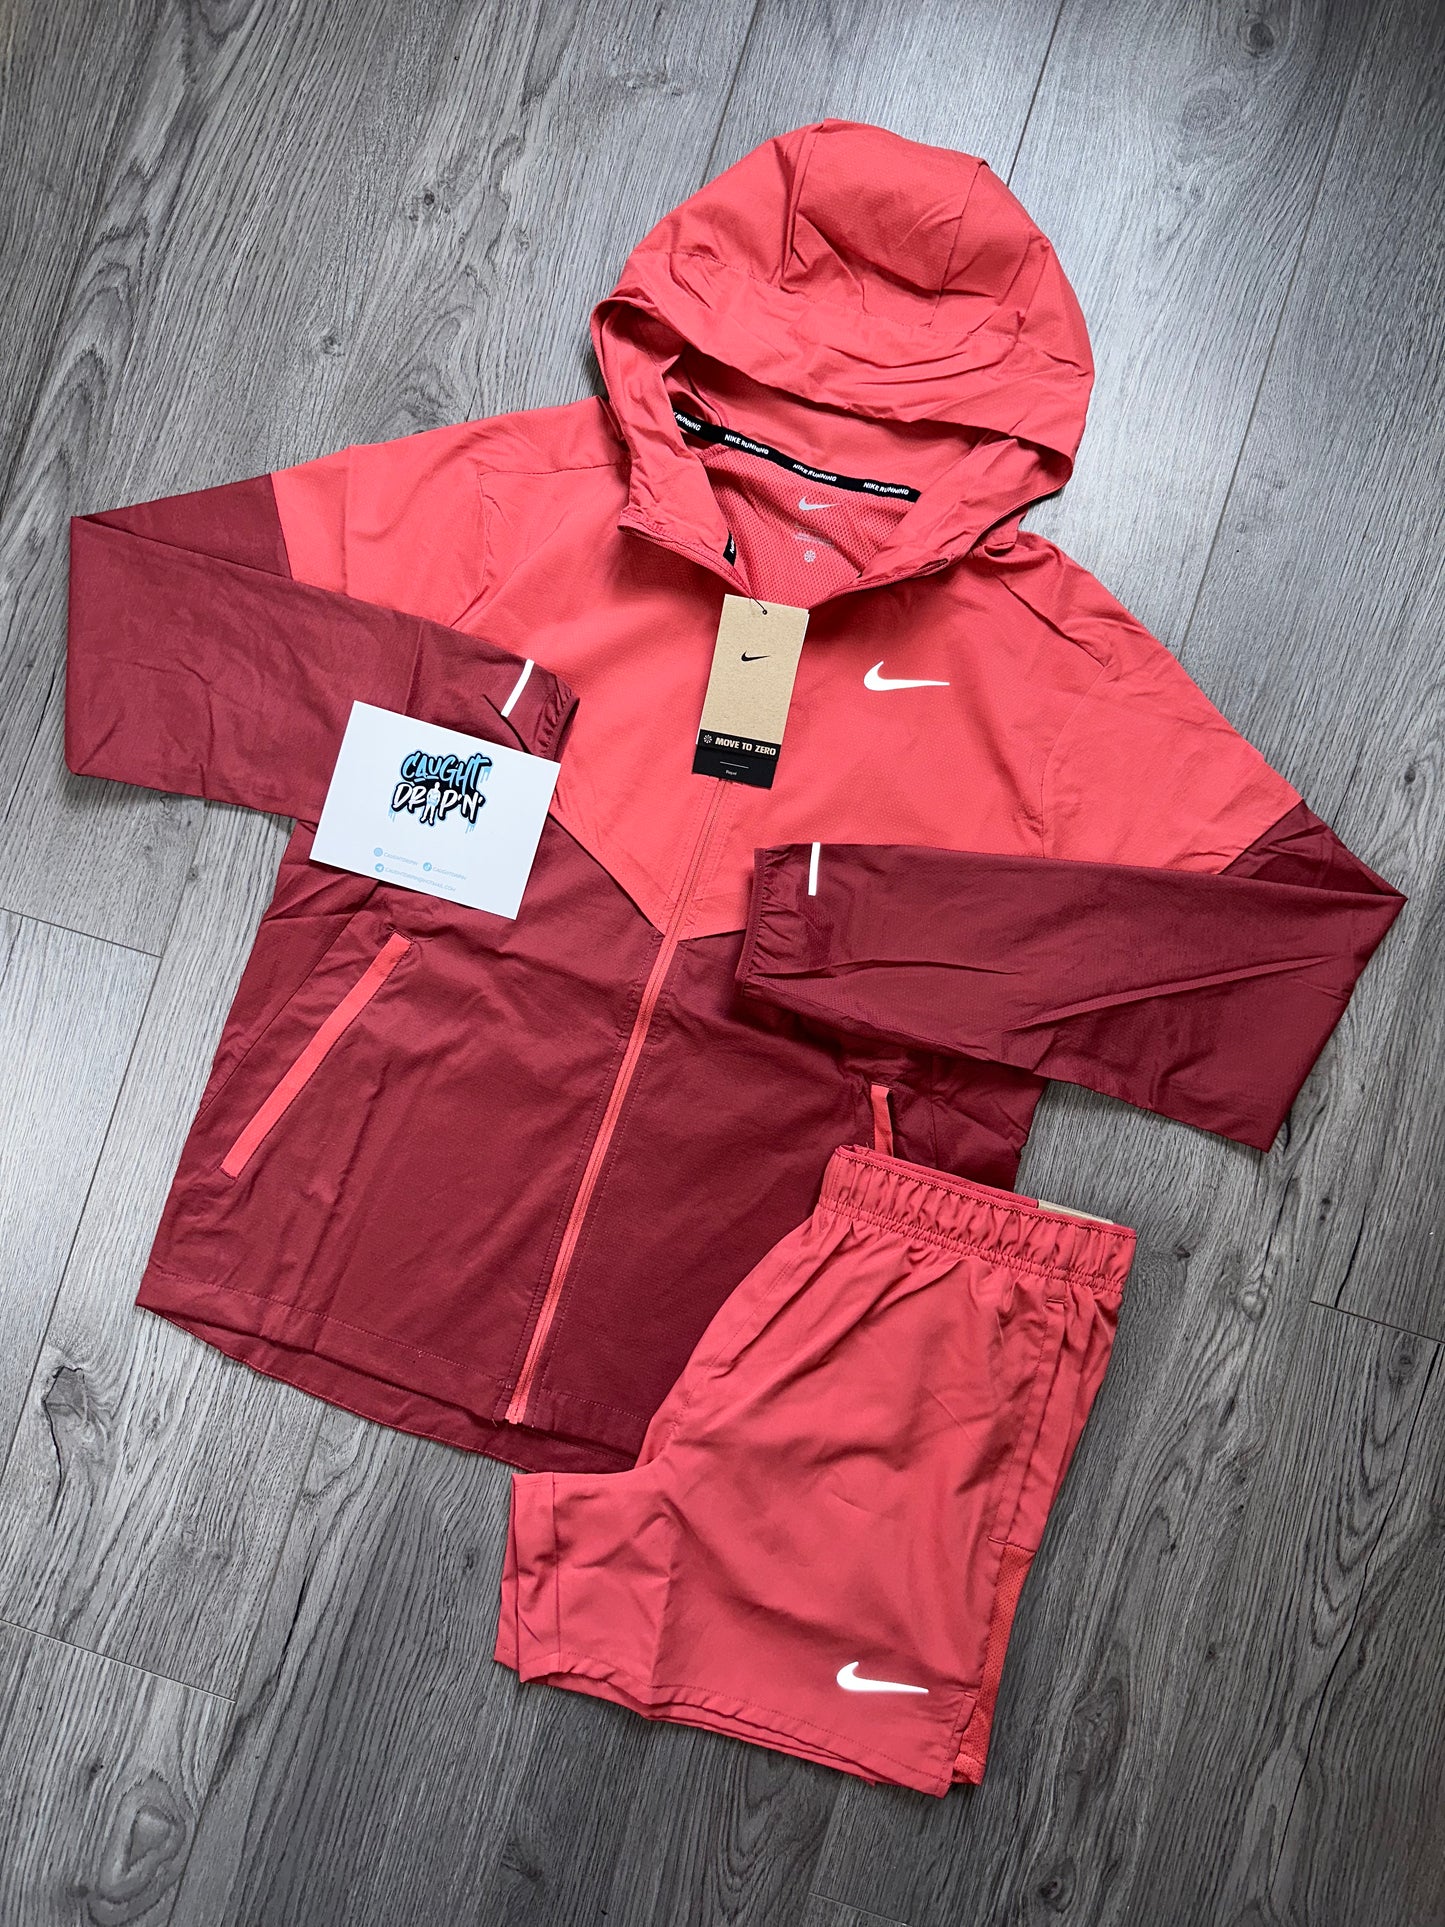 Nike Adobe Red Windrunner Set